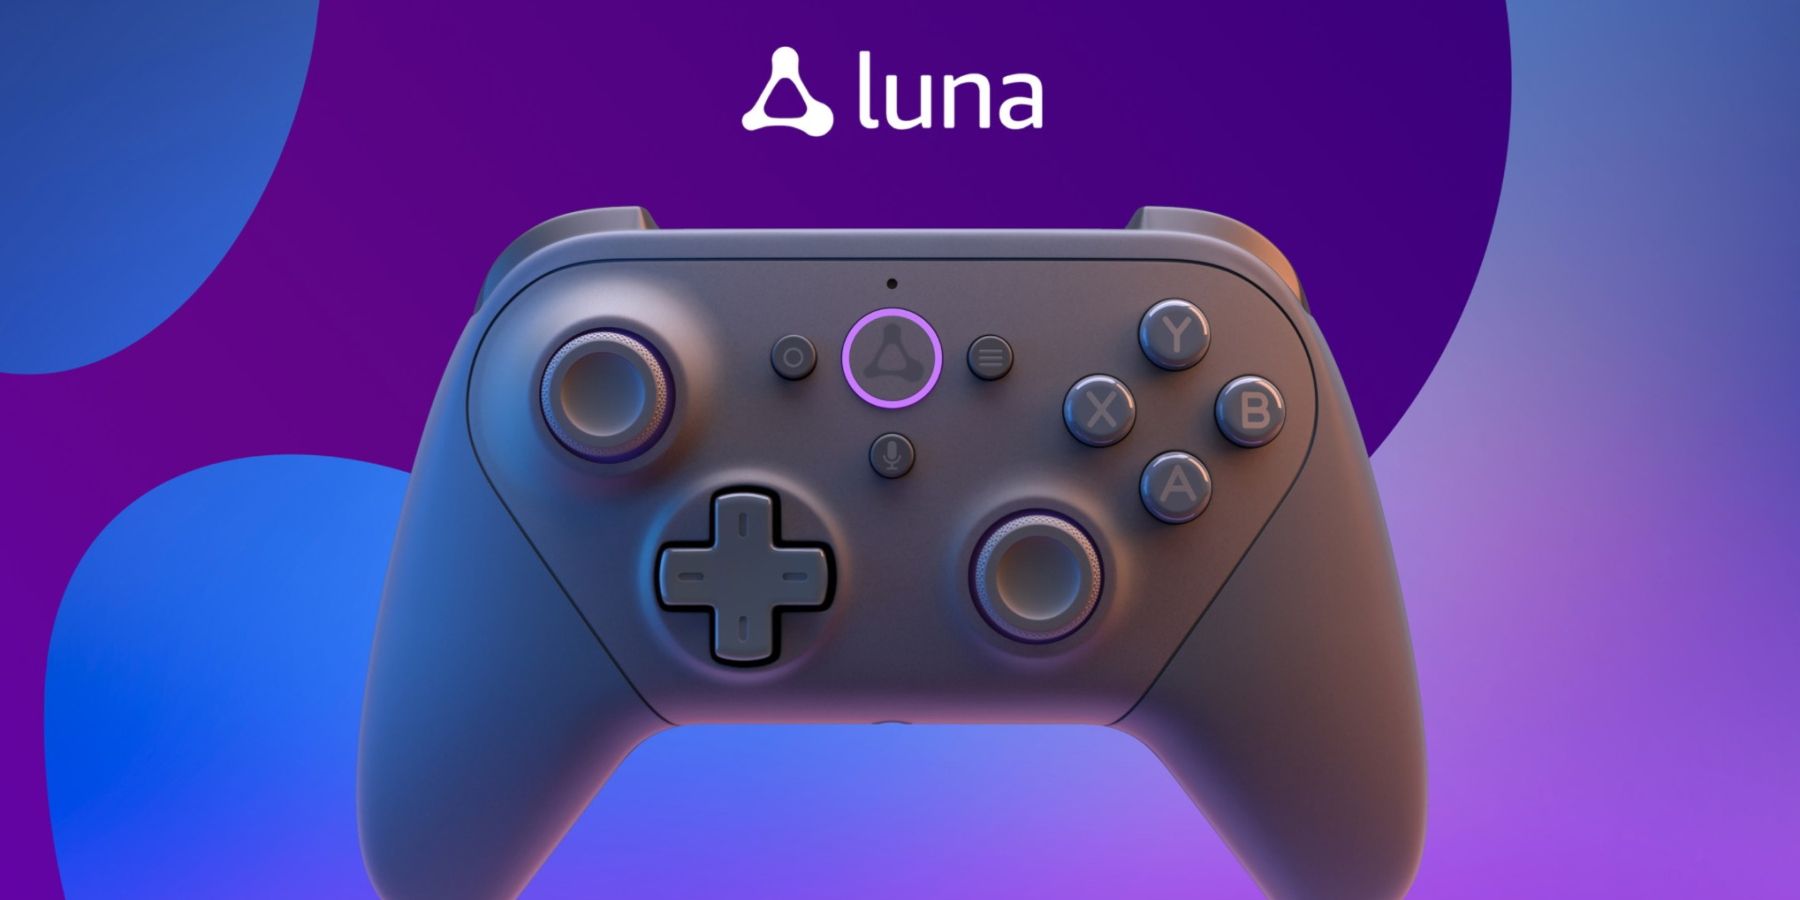 amazon luna logo and controller